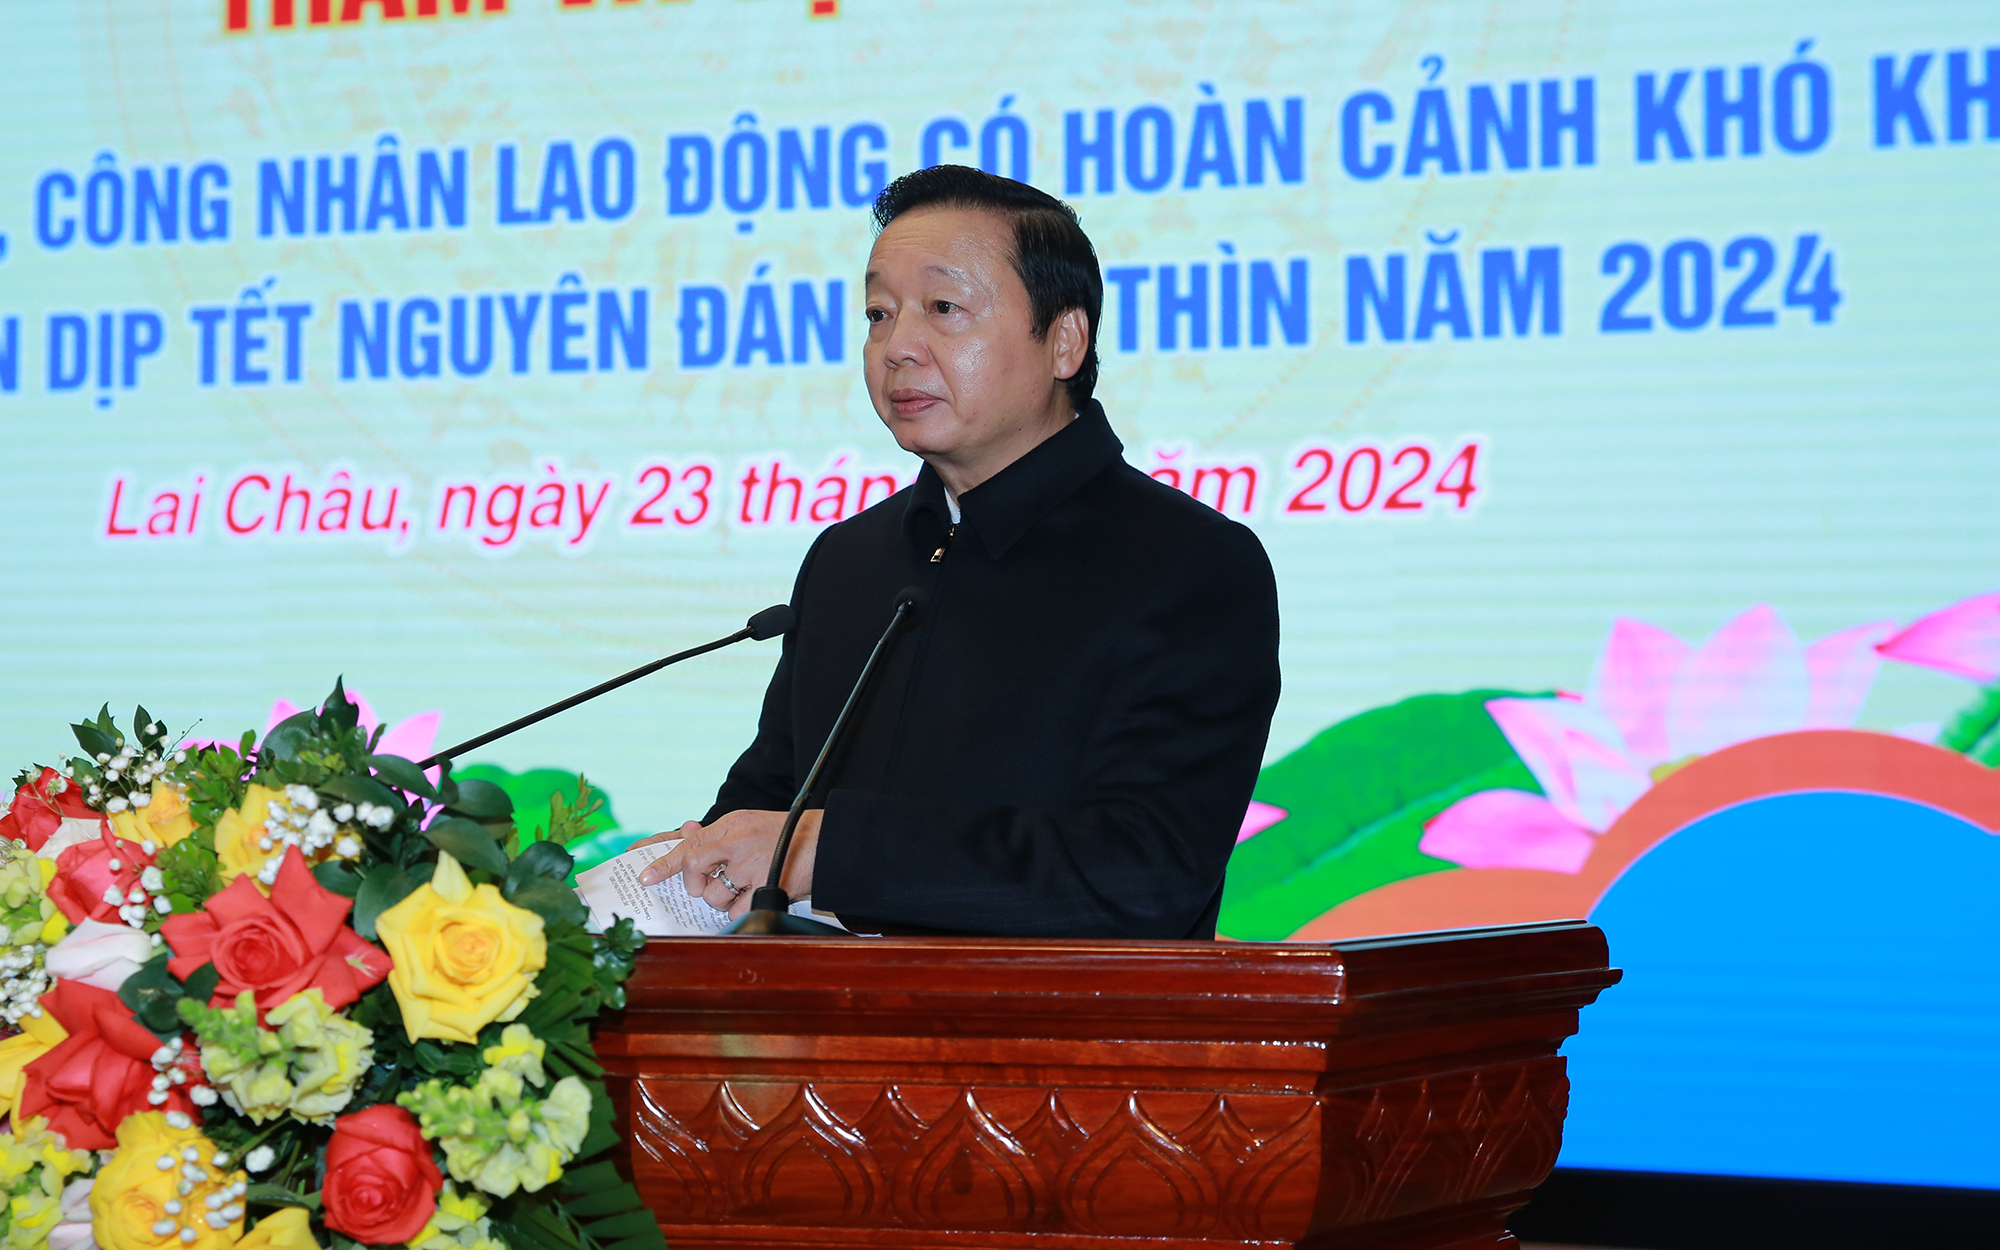 Phó Thủ tướng Trần Hồng Hà: Năm 2024 sẽ có nhiều đổi mới và nâng cao chất lượng và tính bền vững của các chính sách xã hội - Ảnh: VGP/Minh Khôi